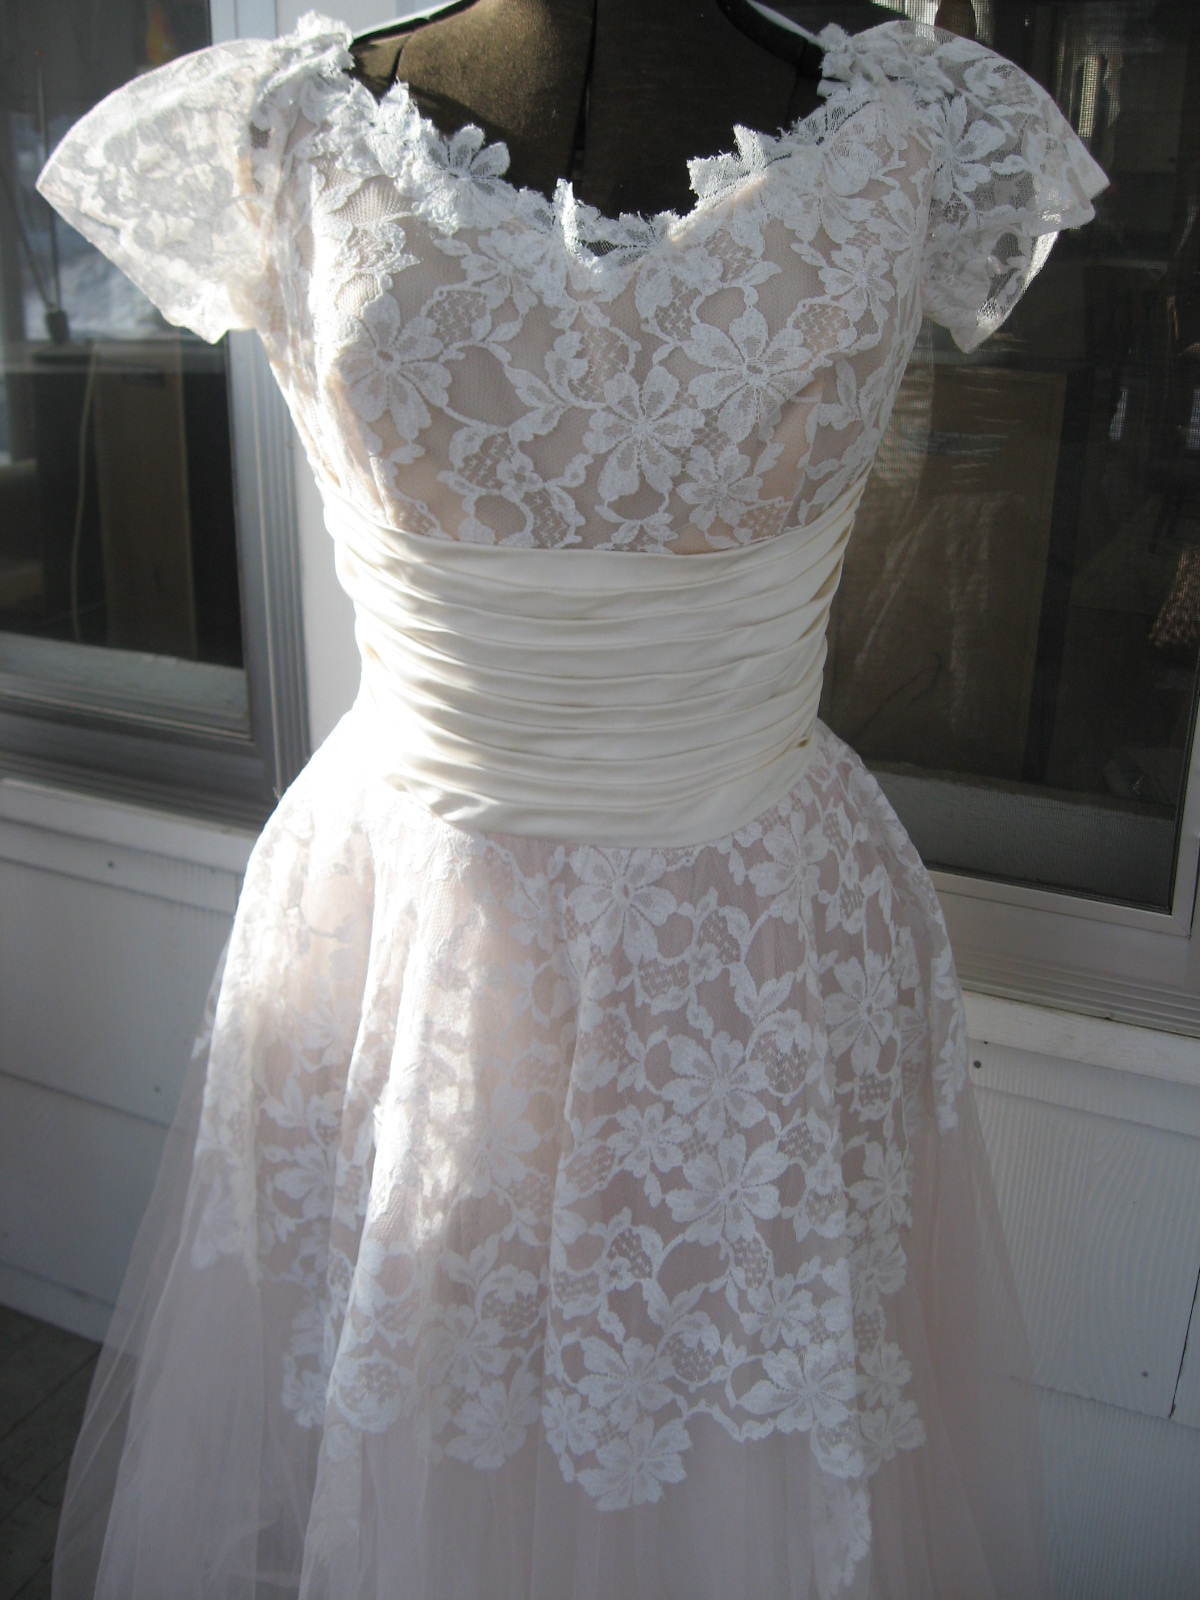 a 1950s wedding dress!